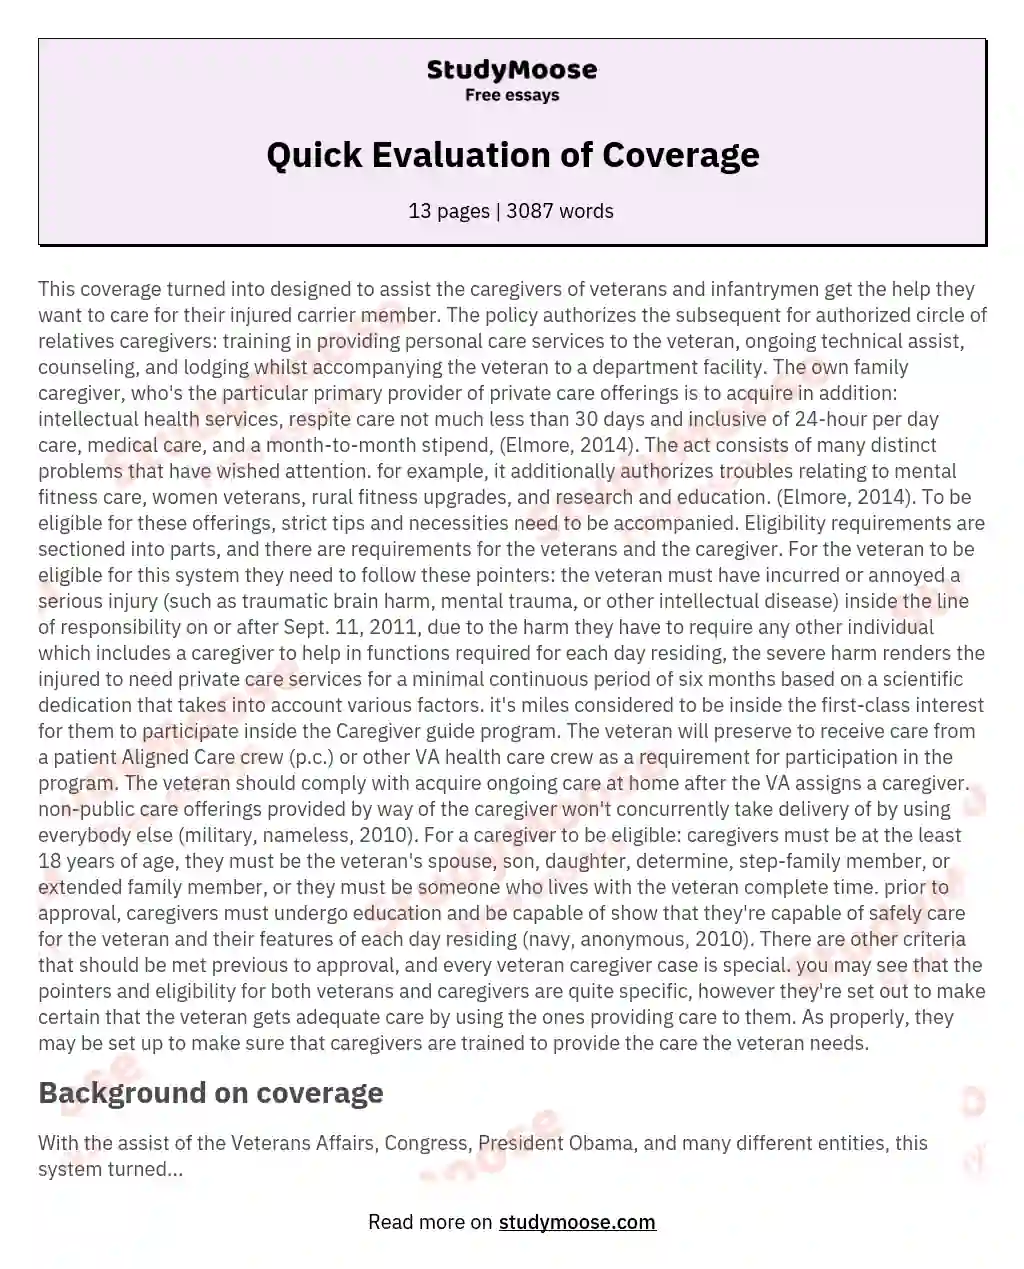 Quick Evaluation of Coverage essay